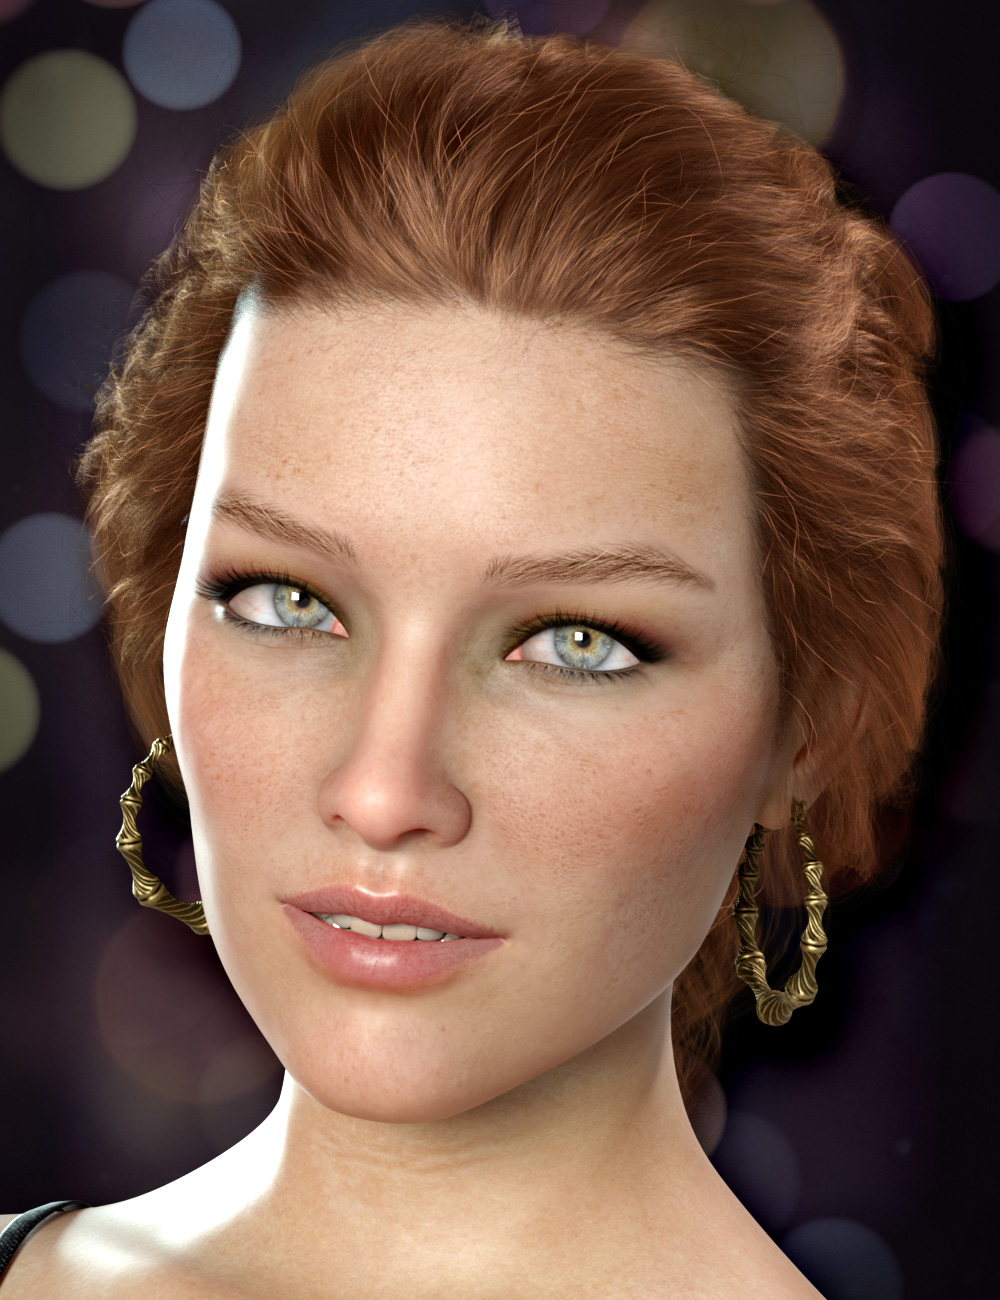 Hoop Earrings Delicate Style for Genesis 8 and 8.1 Females by: esha, 3D Models by Daz 3D